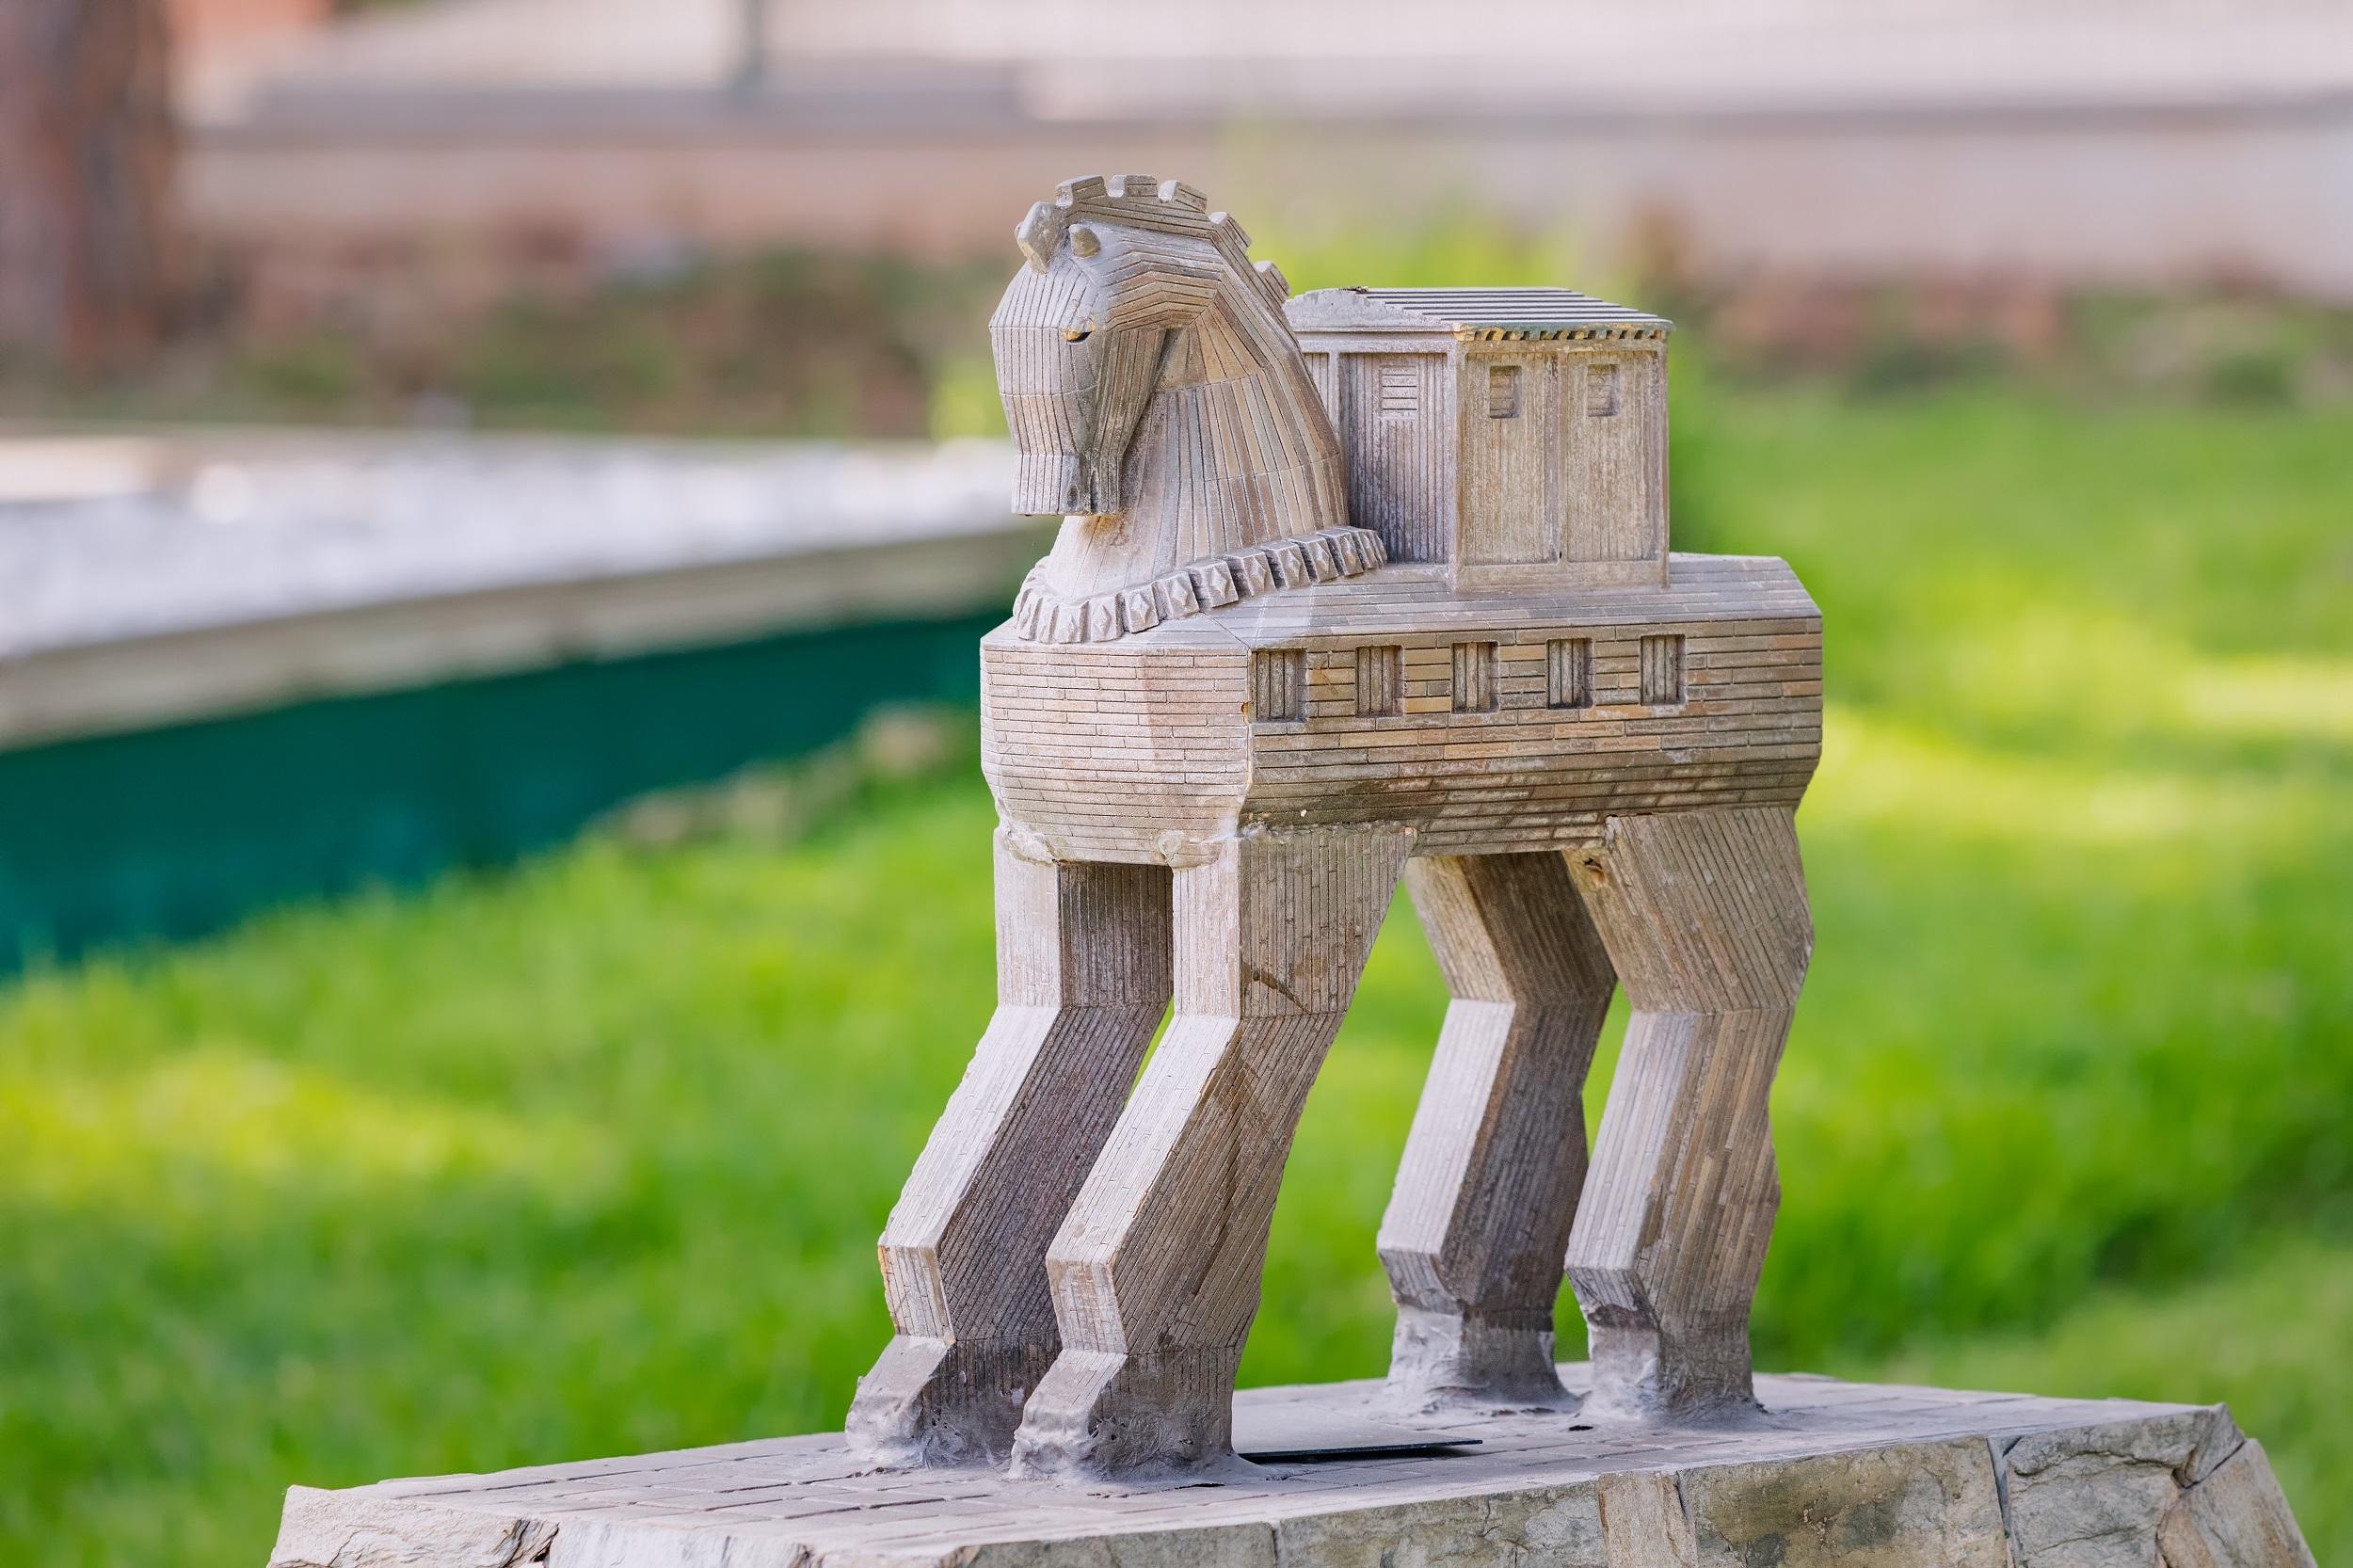 Trojaanse paard